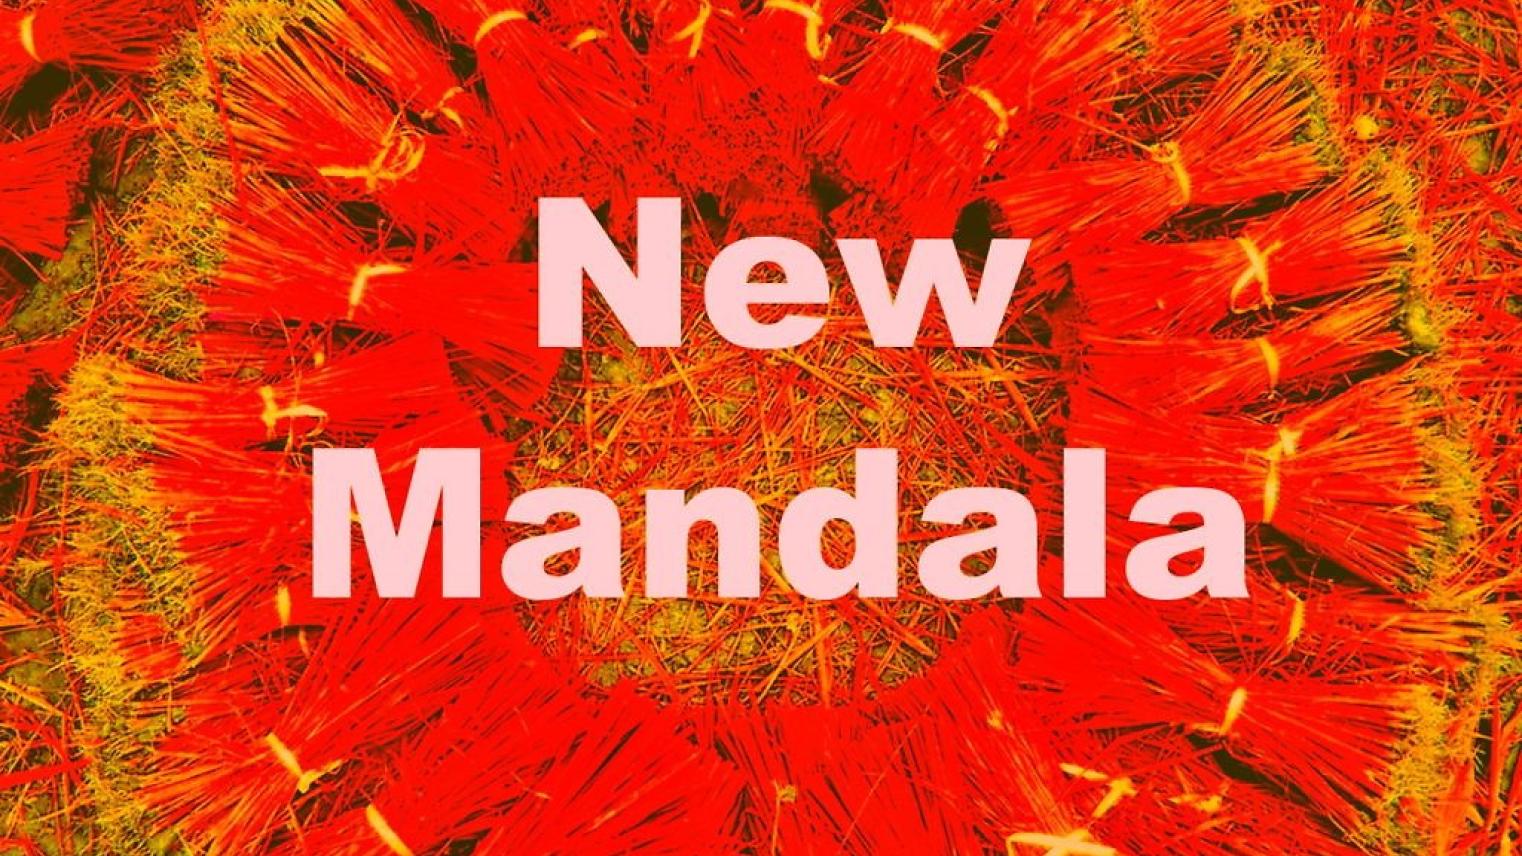 new-mandala-anniversary-event.jpg